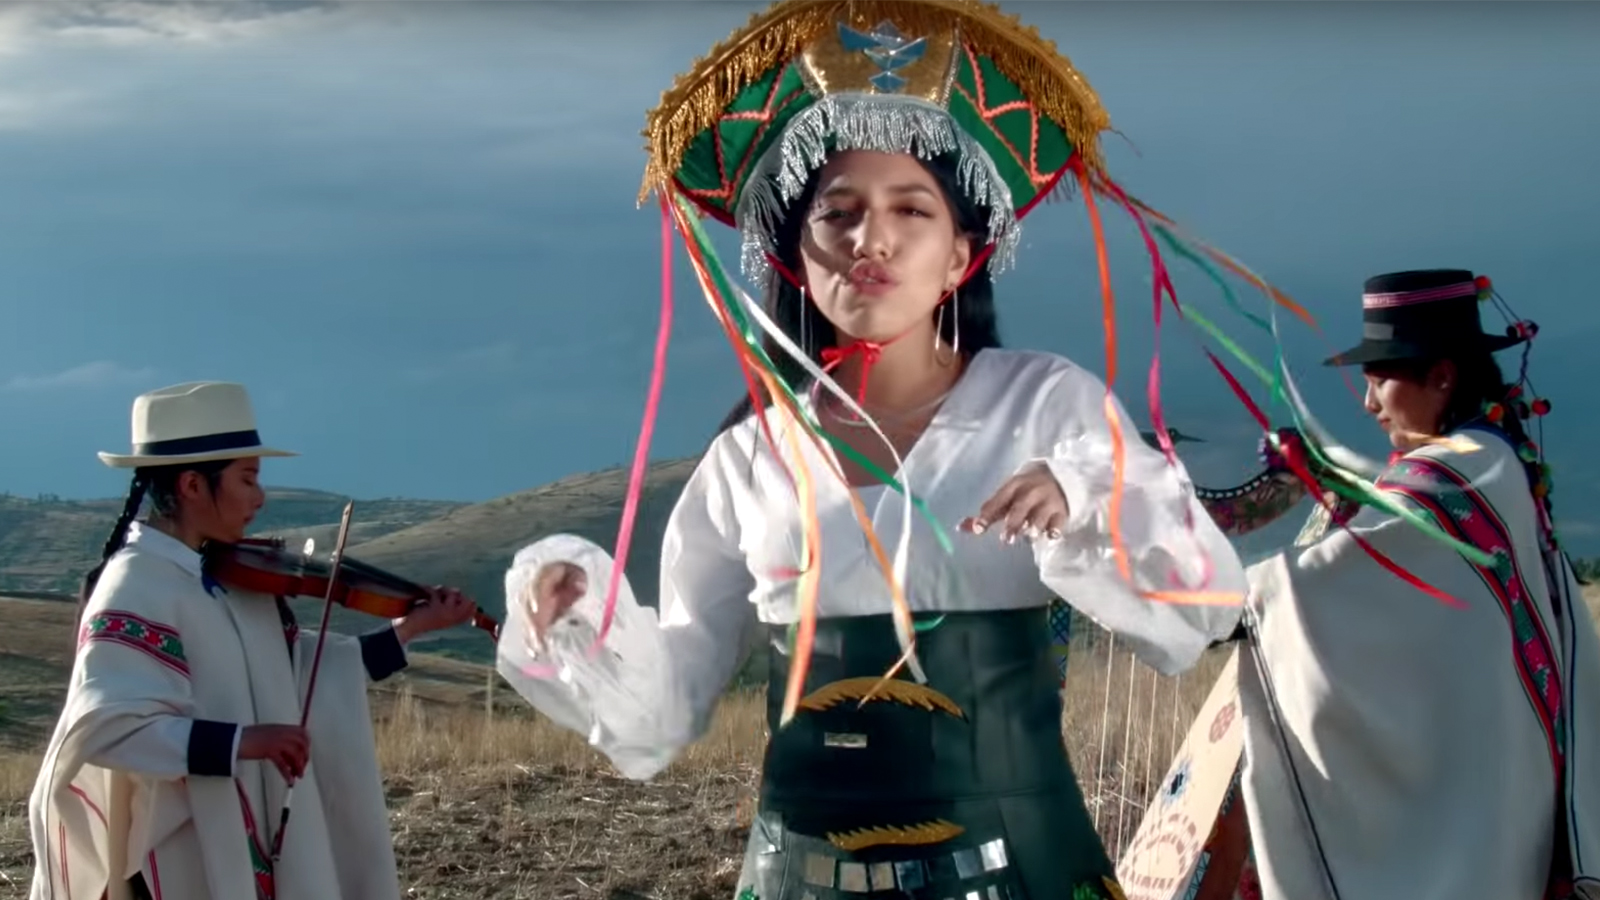 Condimento Él mismo Marinero Trap en quechua fusionado con ritmos folclóricos: esa es la propuesta de Renata  Flores - CNN Video